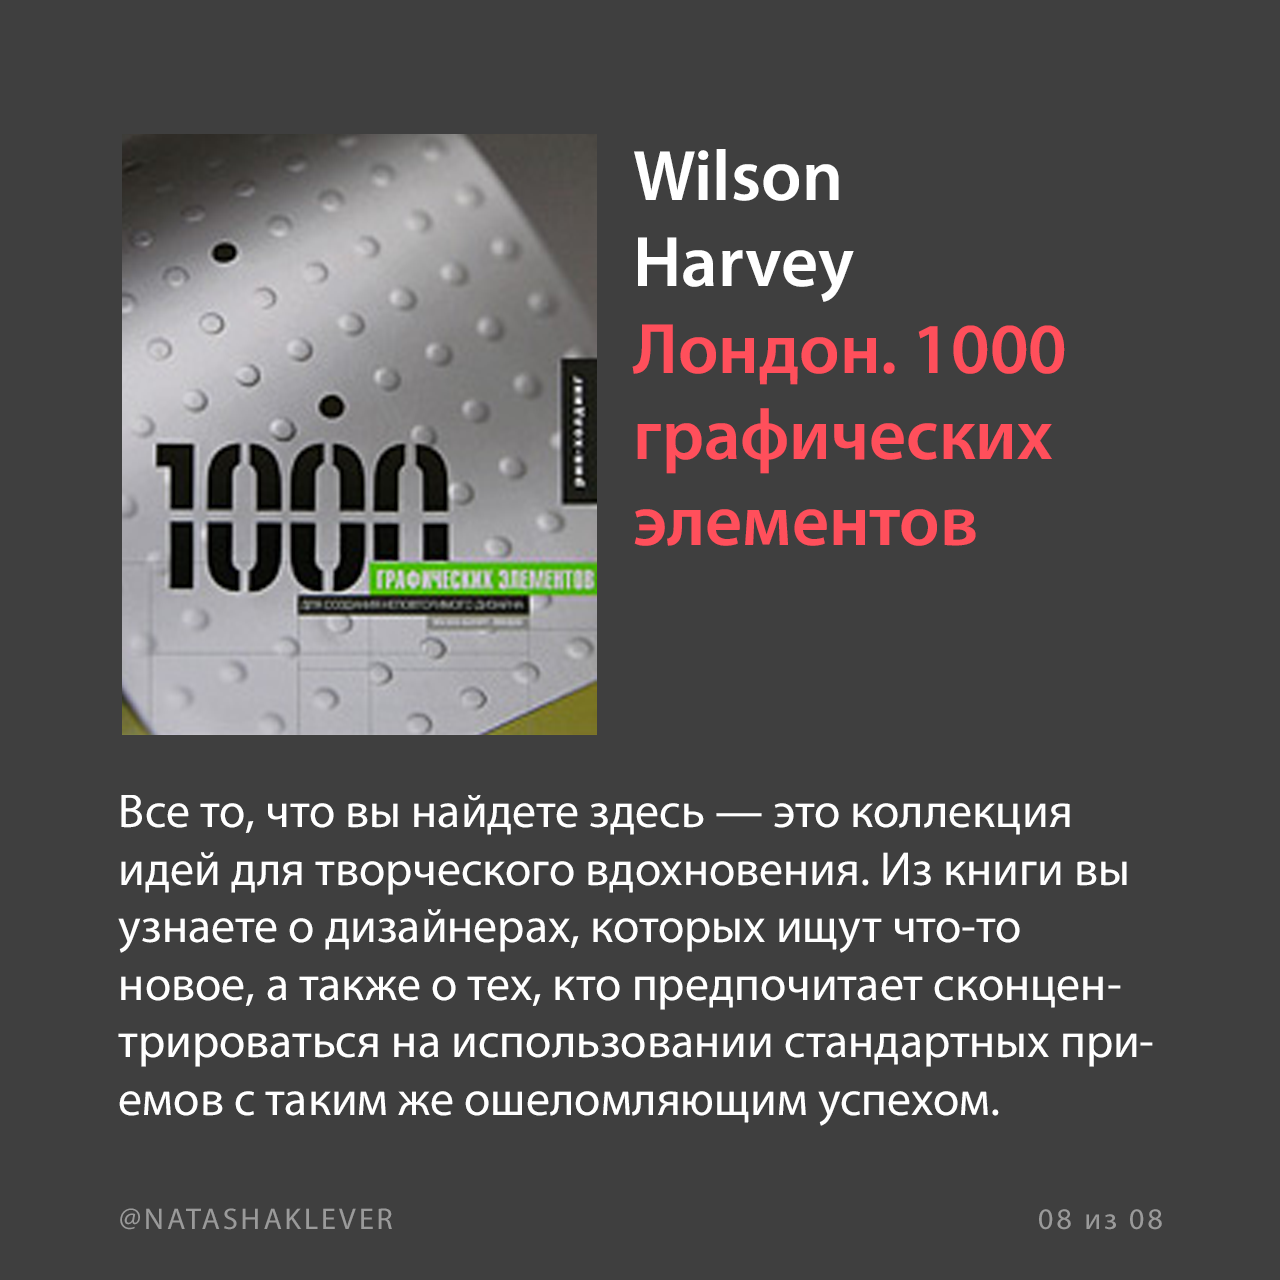 Wilson Harvey Лондон. 1000 графических элементов